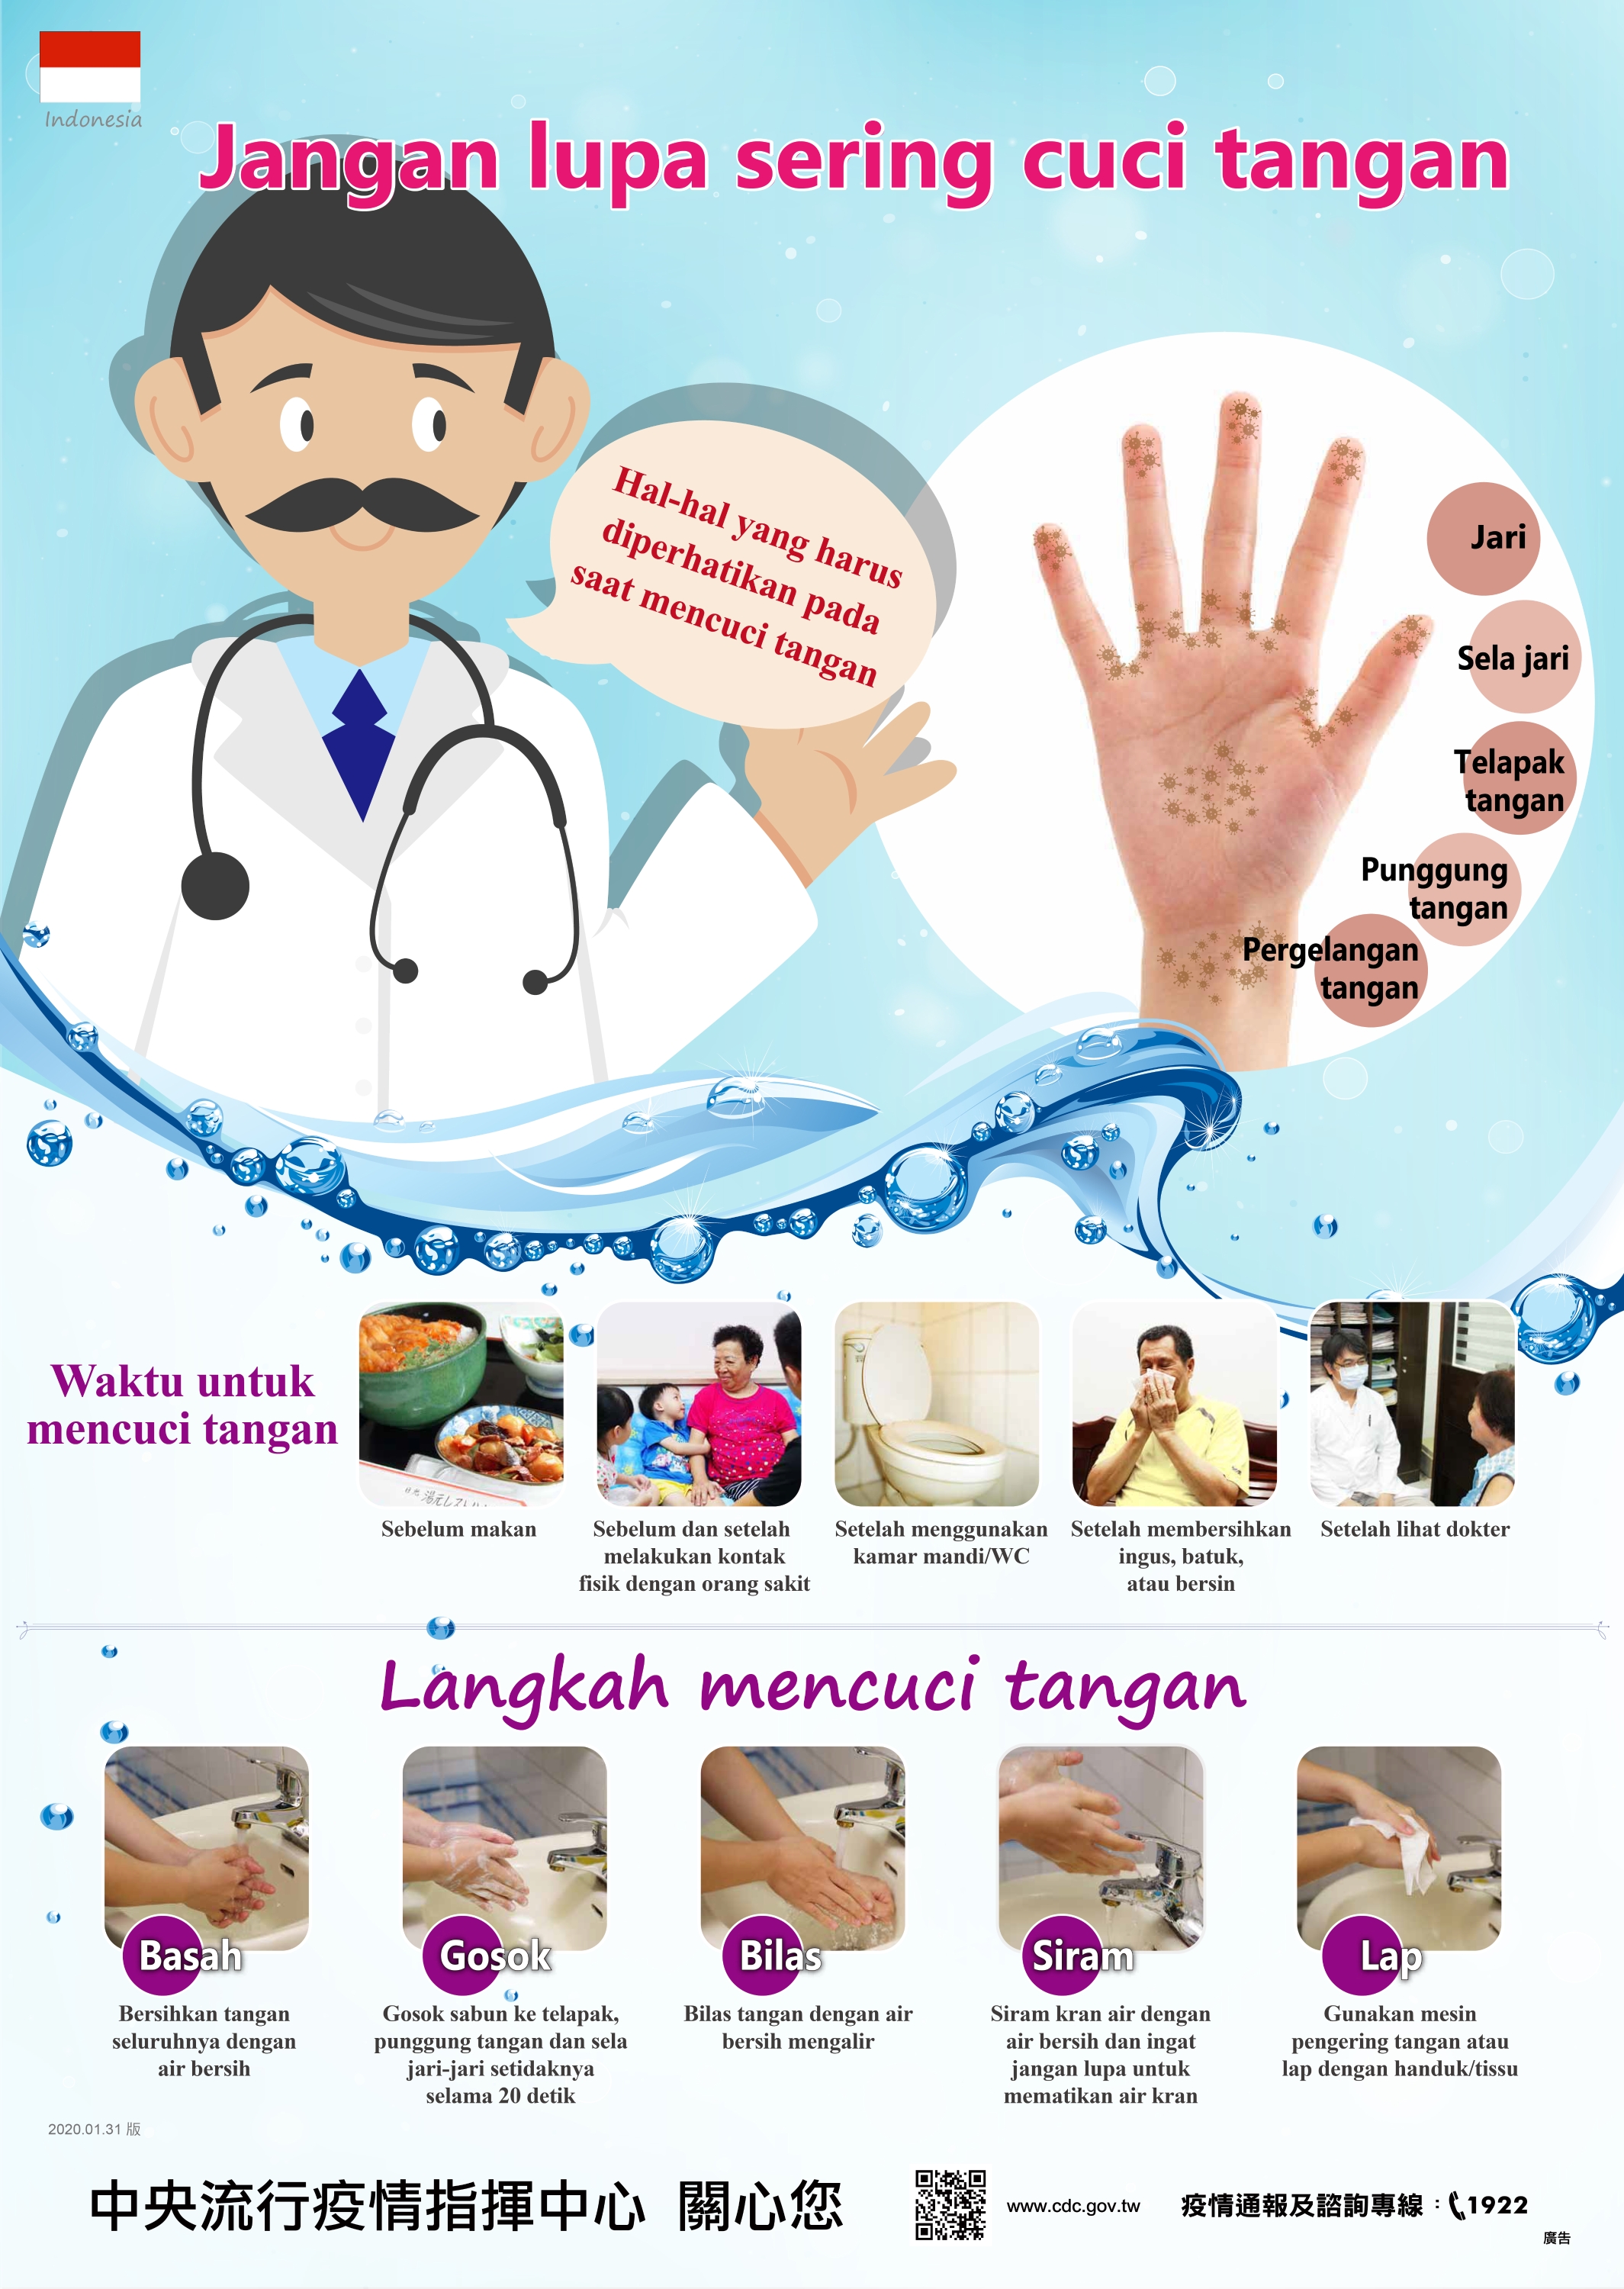 經常洗手不可少(印尼)